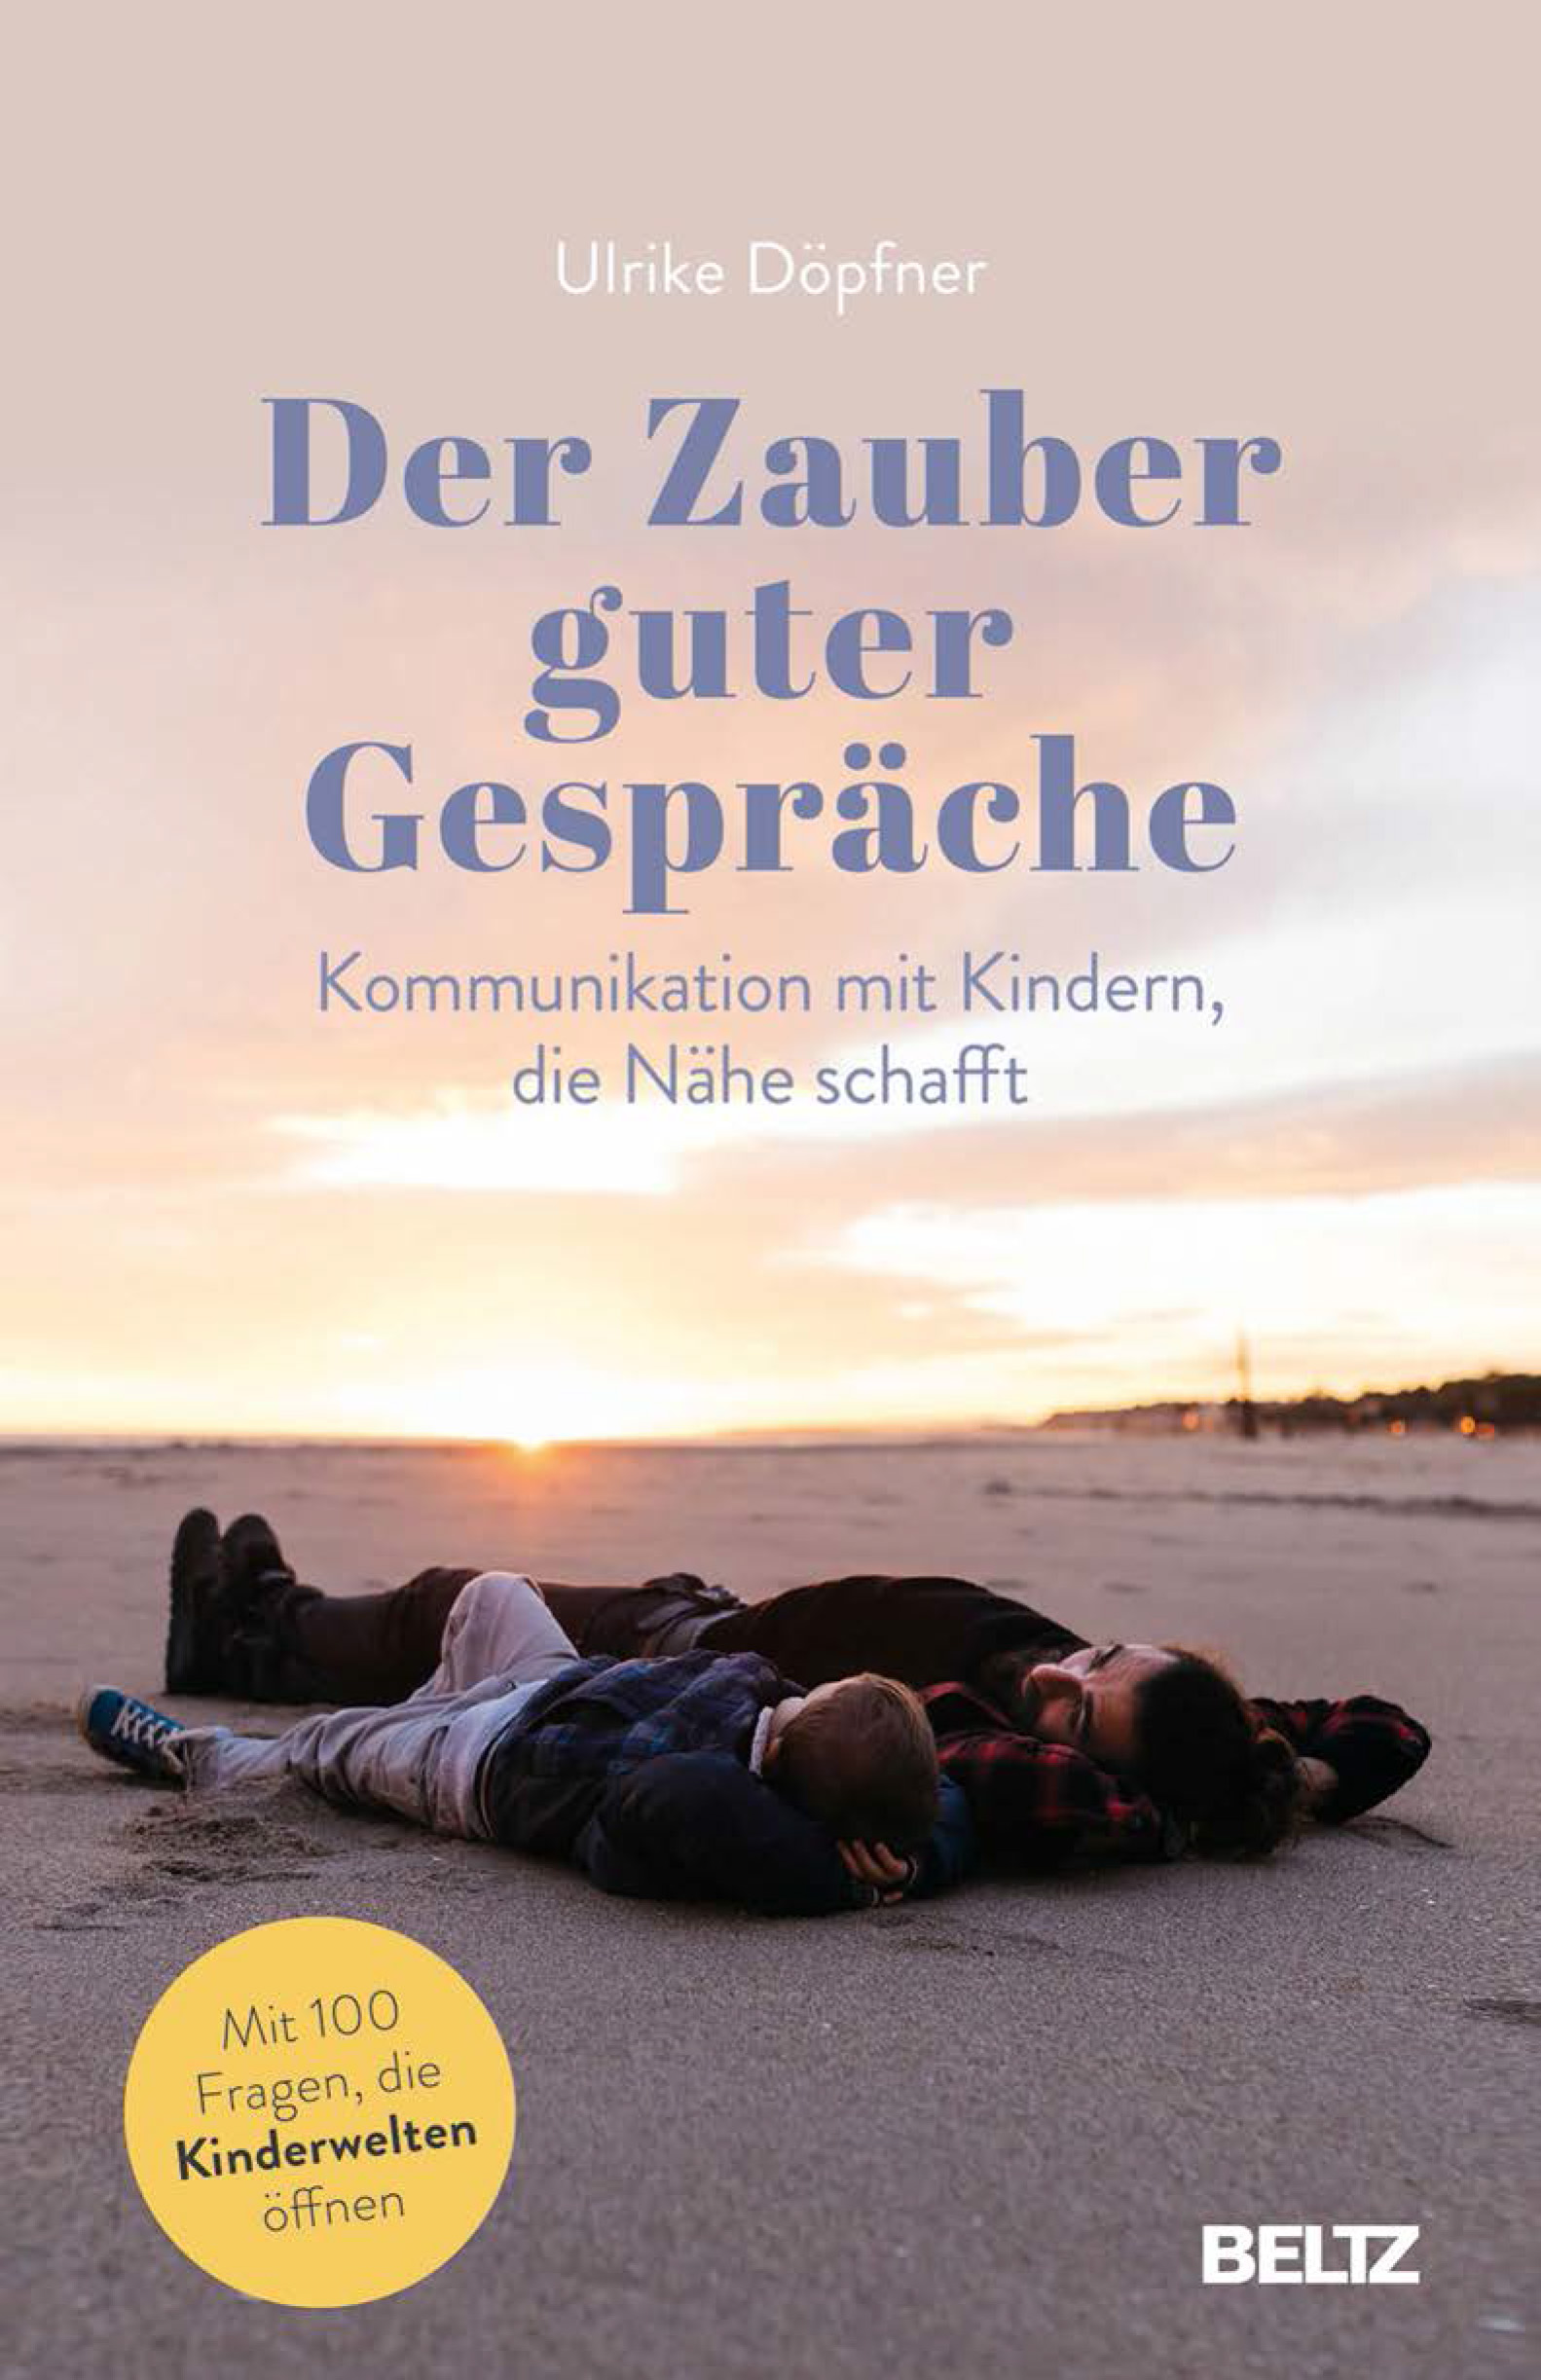 Das Buch „Der Zauber guter Gespräche“ von Ulrike Döpfner ist im Beltz Verlag erschienen. Foto: Beltz